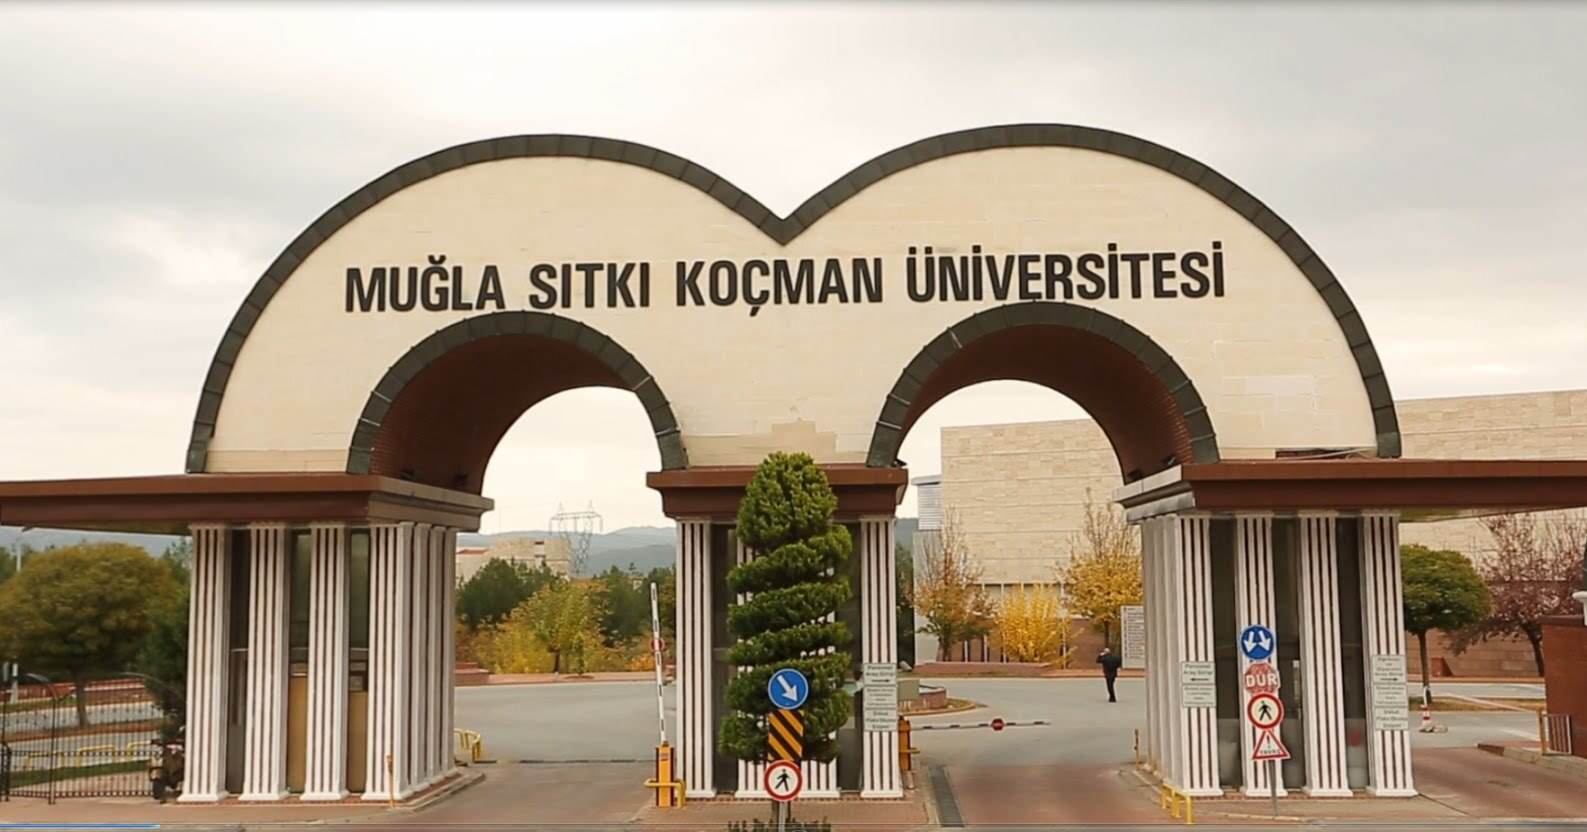 Muğla Sıtkı Koçman Üniversitesi Turizm Fakültesi